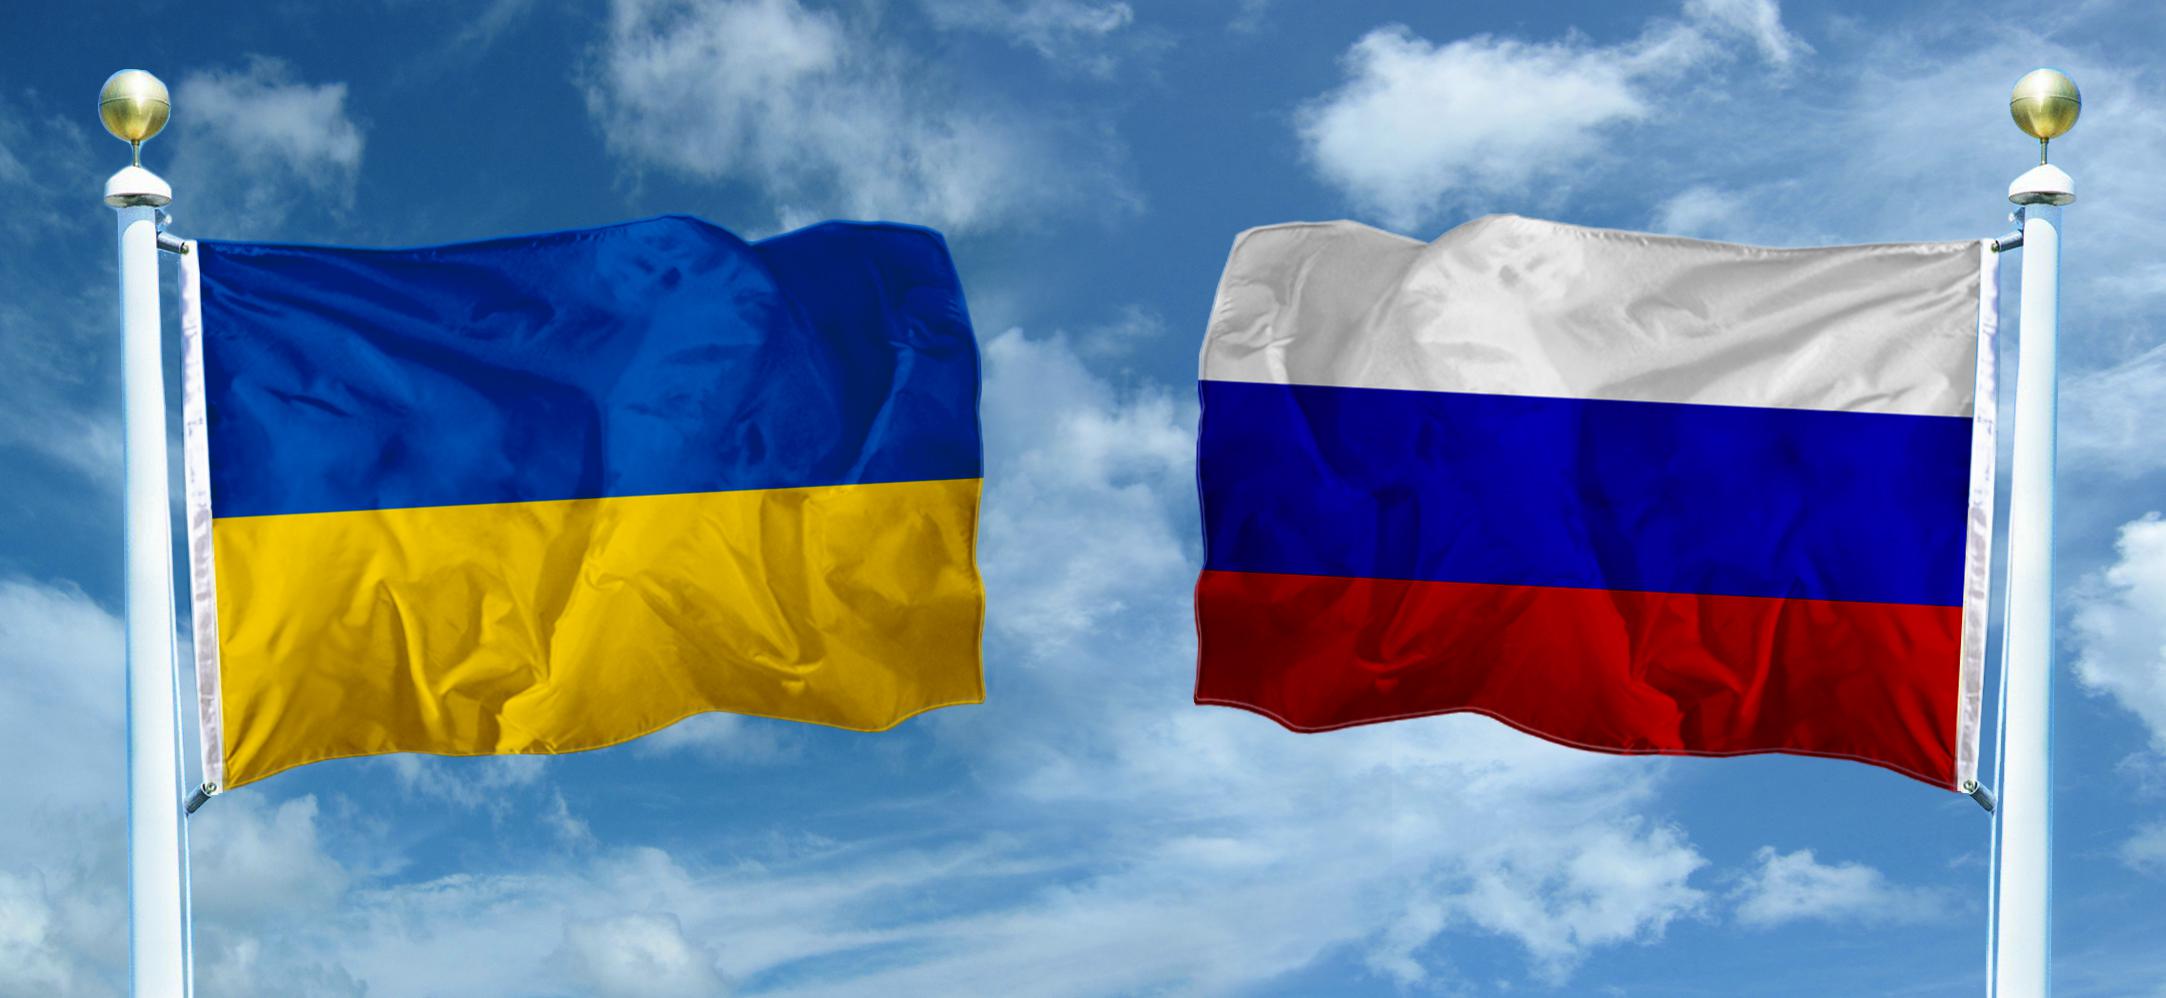 Украина уходит от России в Евросоюз: стало известно о переломном моменте для украинской экономики